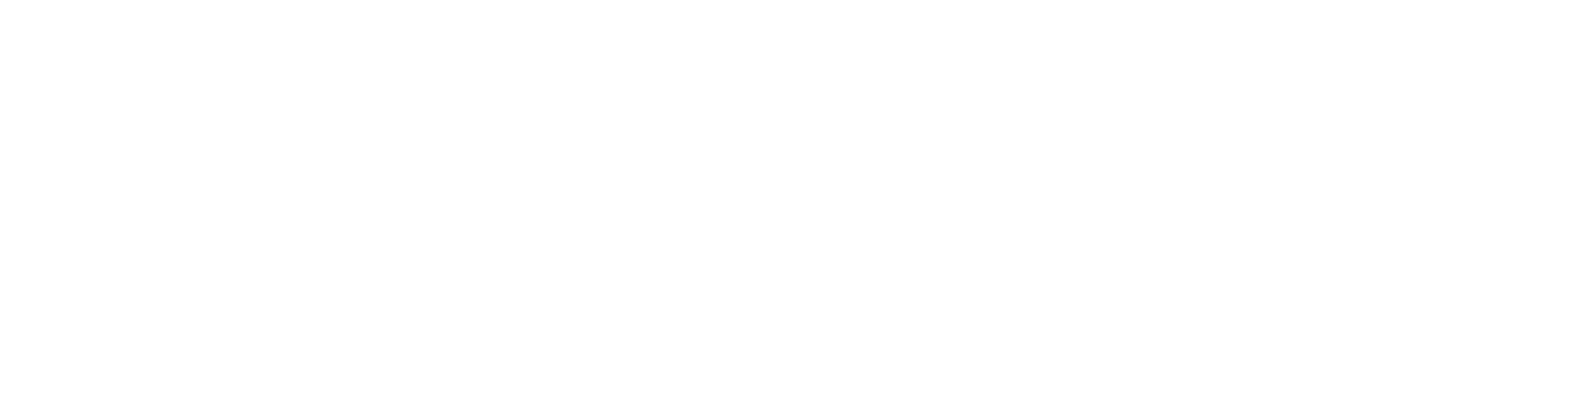 Genelux logo grand pour les fonds sombres (PNG transparent)